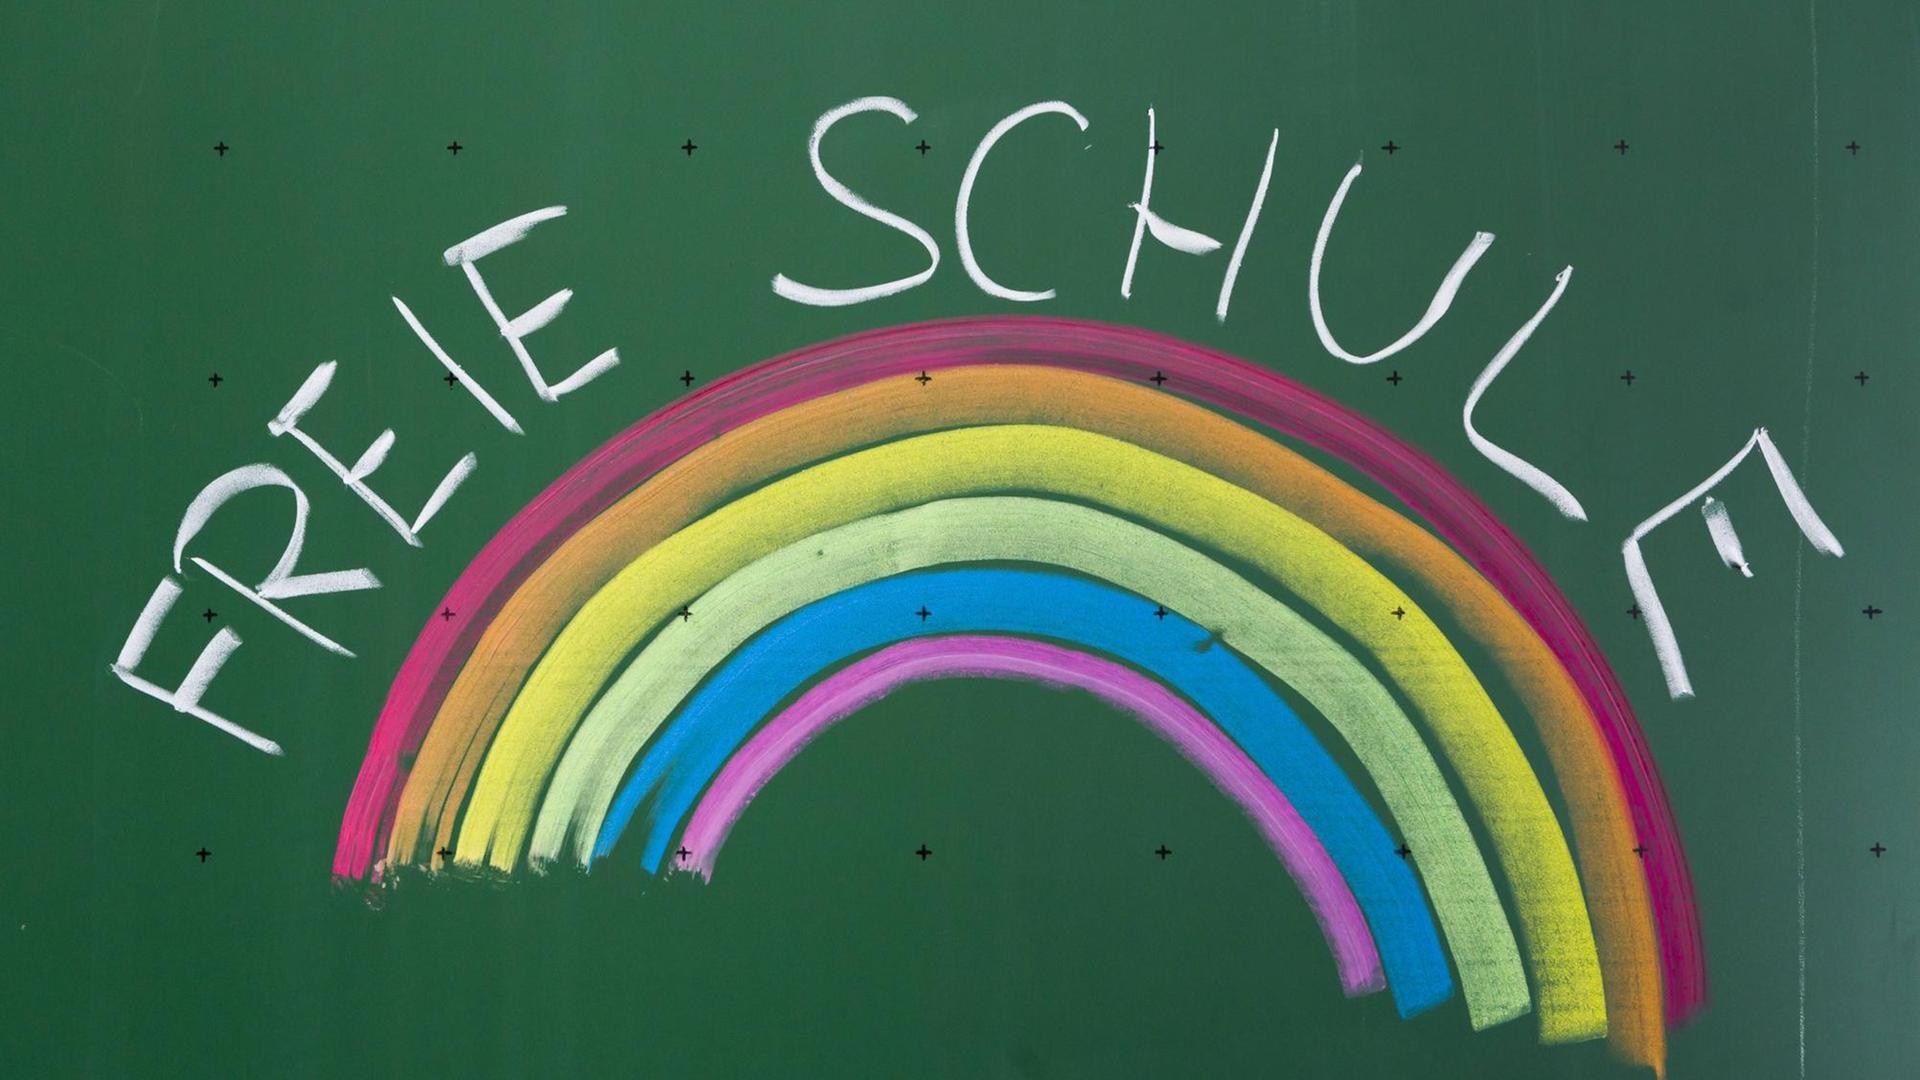 Eine Tafel mit der Aufschrift "Freie Schule" und einem Regenbogen